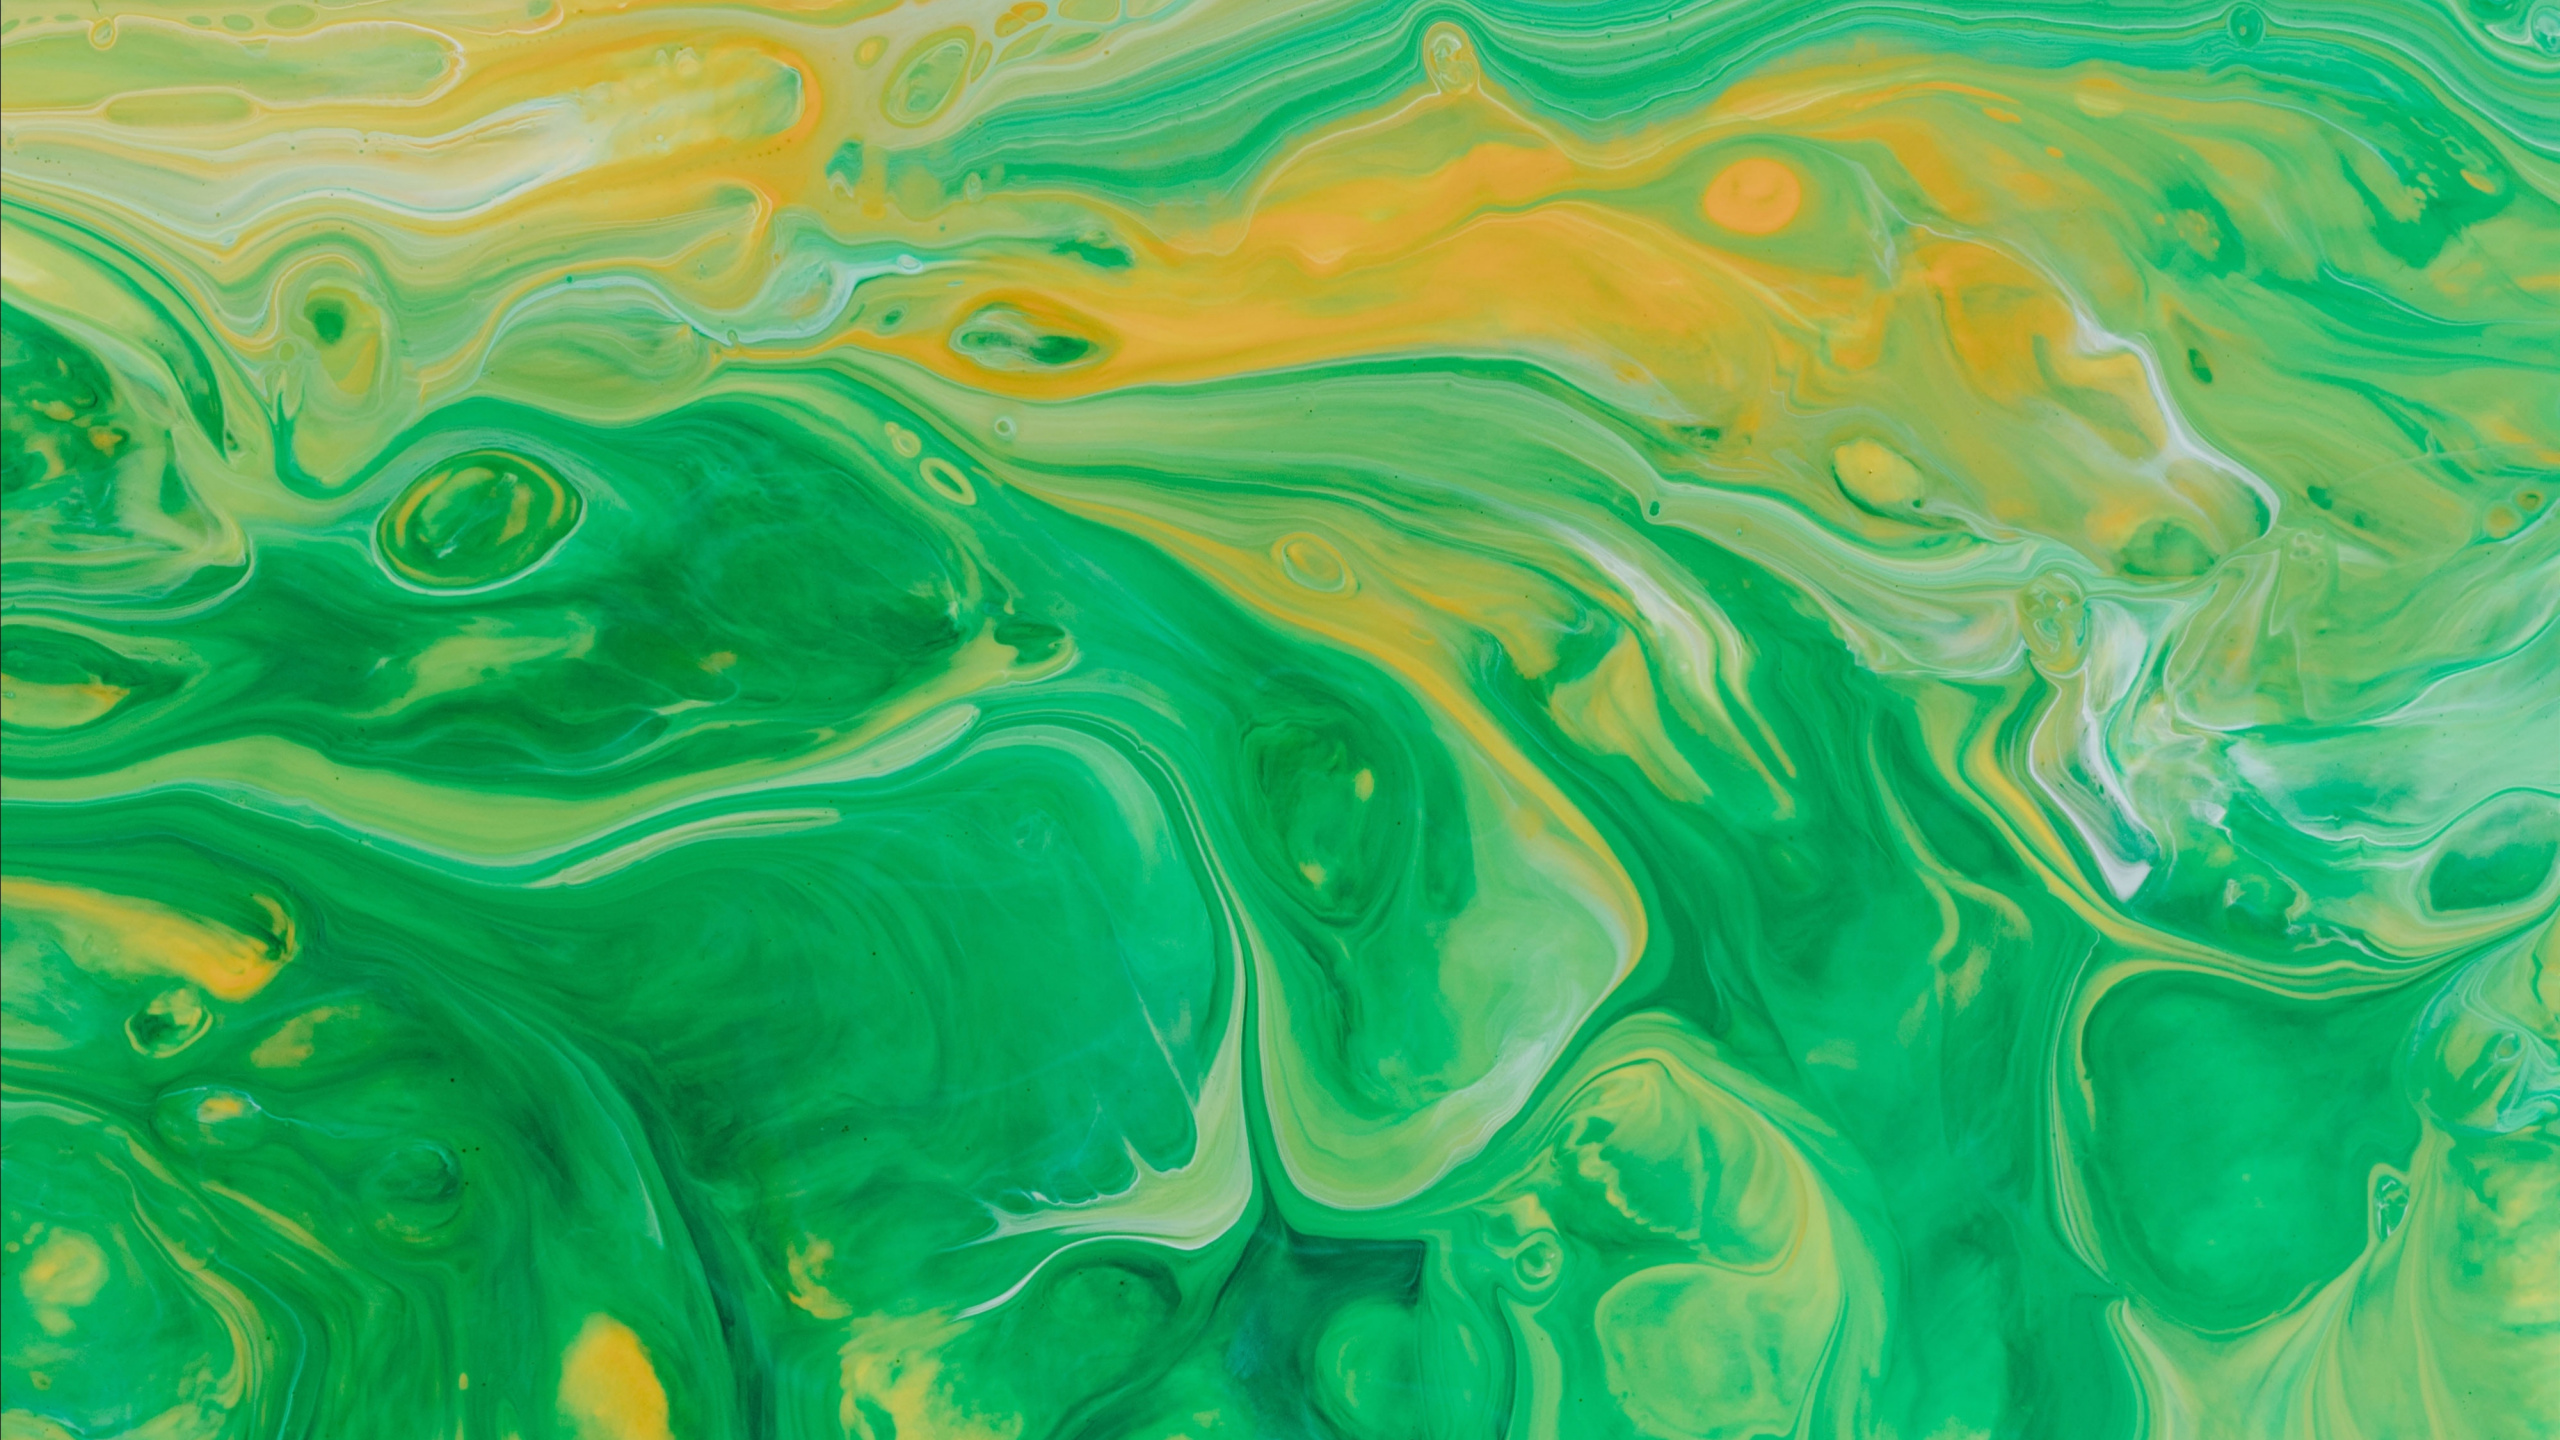 Pintura Abstracta Verde y Amarilla. Wallpaper in 2560x1440 Resolution